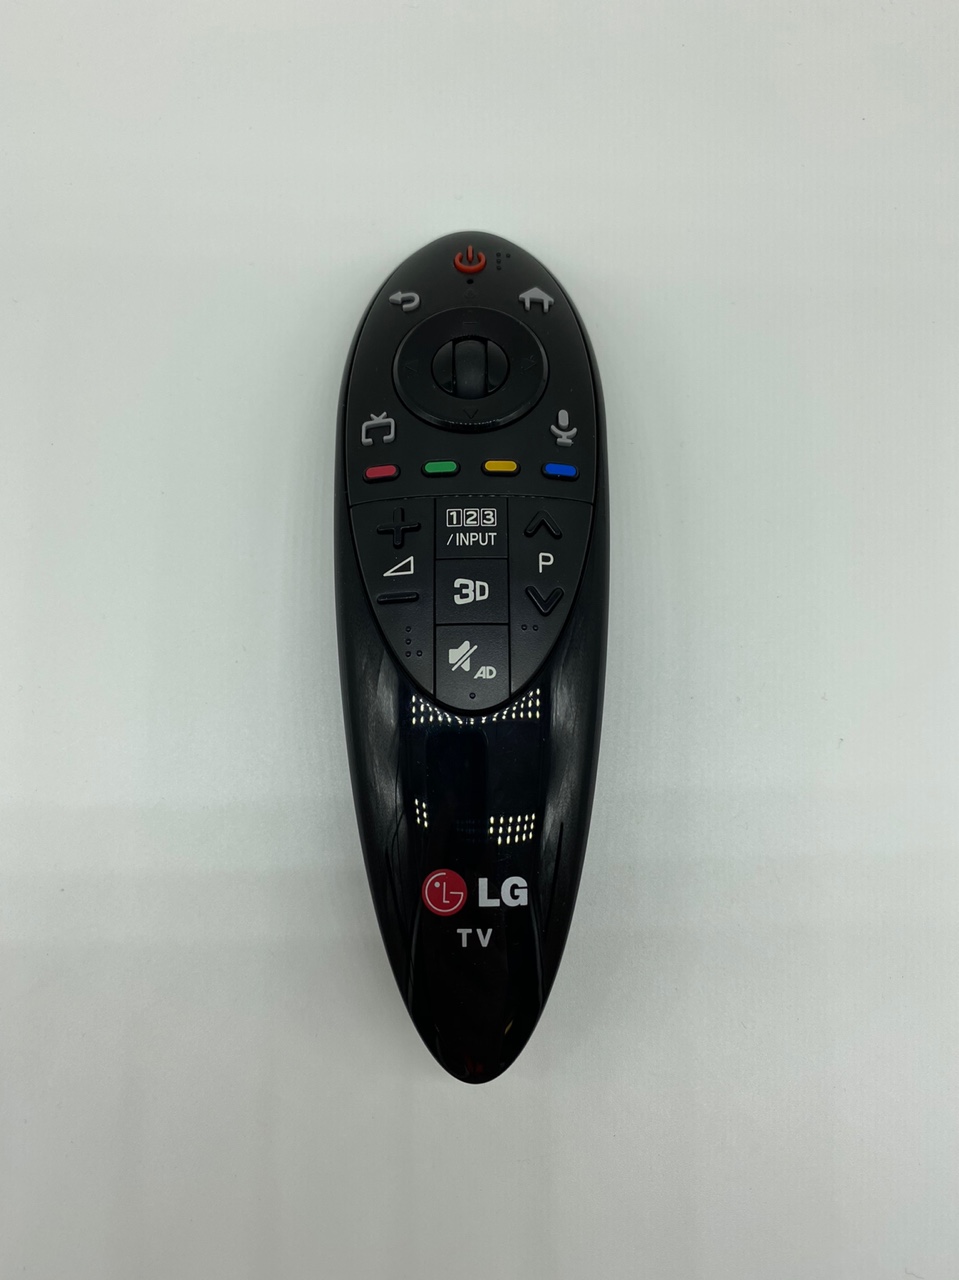 Пульт для телевизора LG an Mr 500 Magic Remote серебристый. LG tv50 Magic Remote 2017. Пульт дистанционного управления для LG TV Smart Magic.